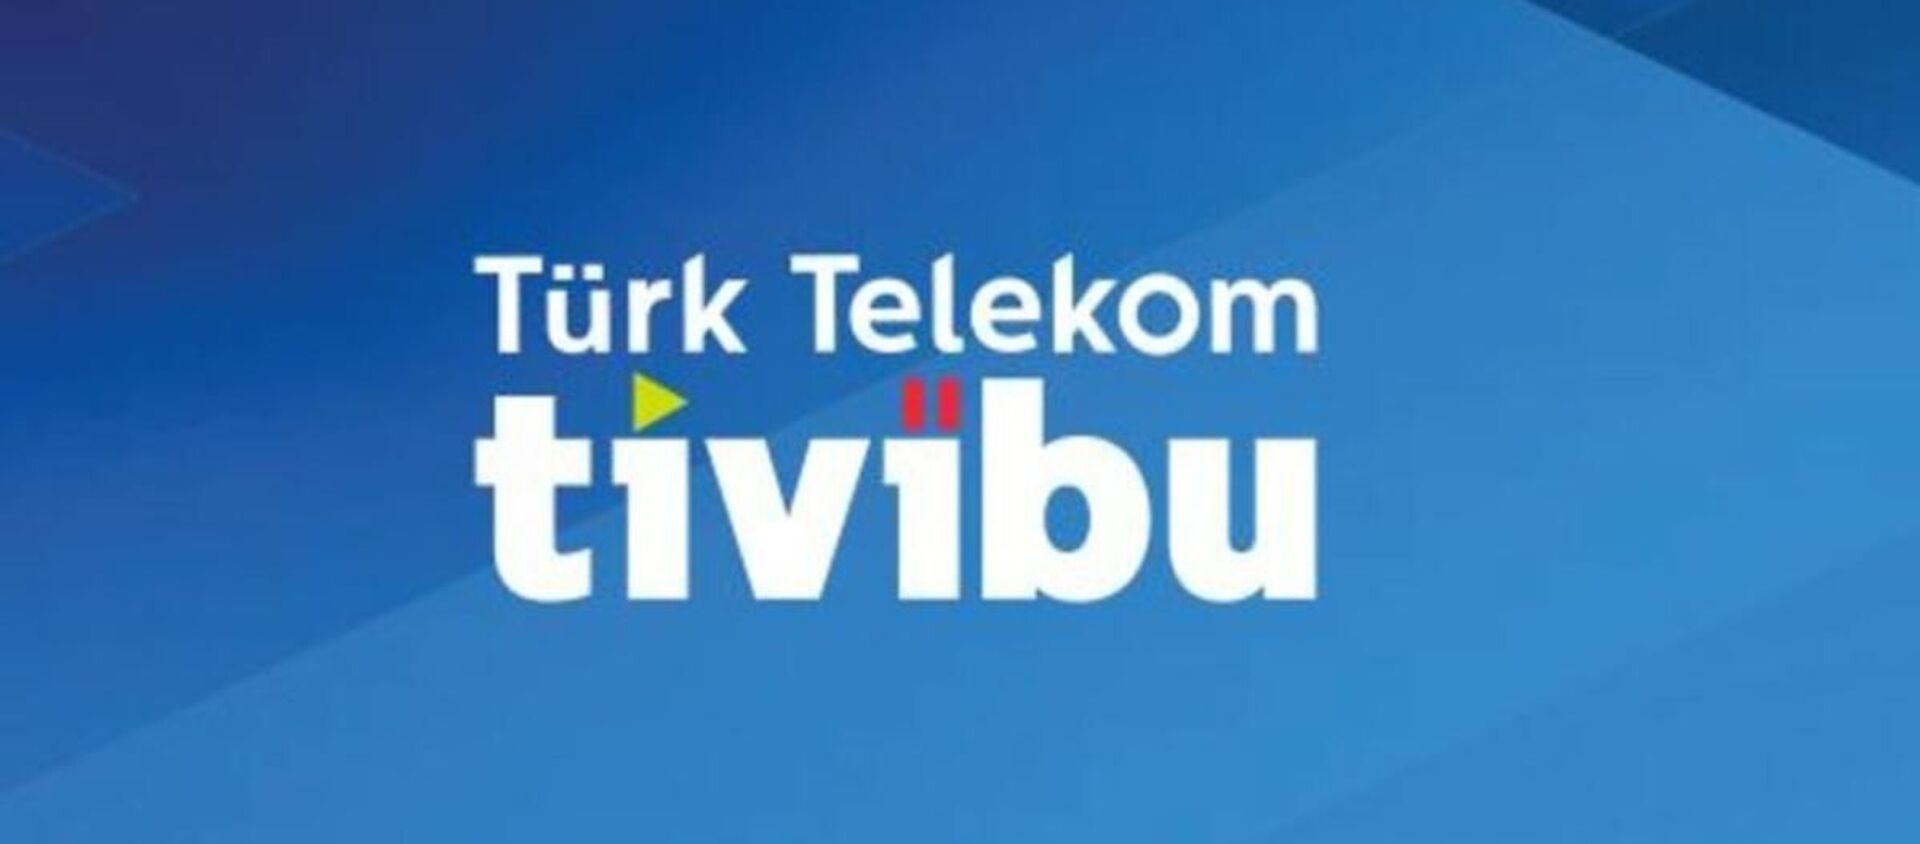 Tivibu - Sputnik Türkiye, 1920, 16.10.2020